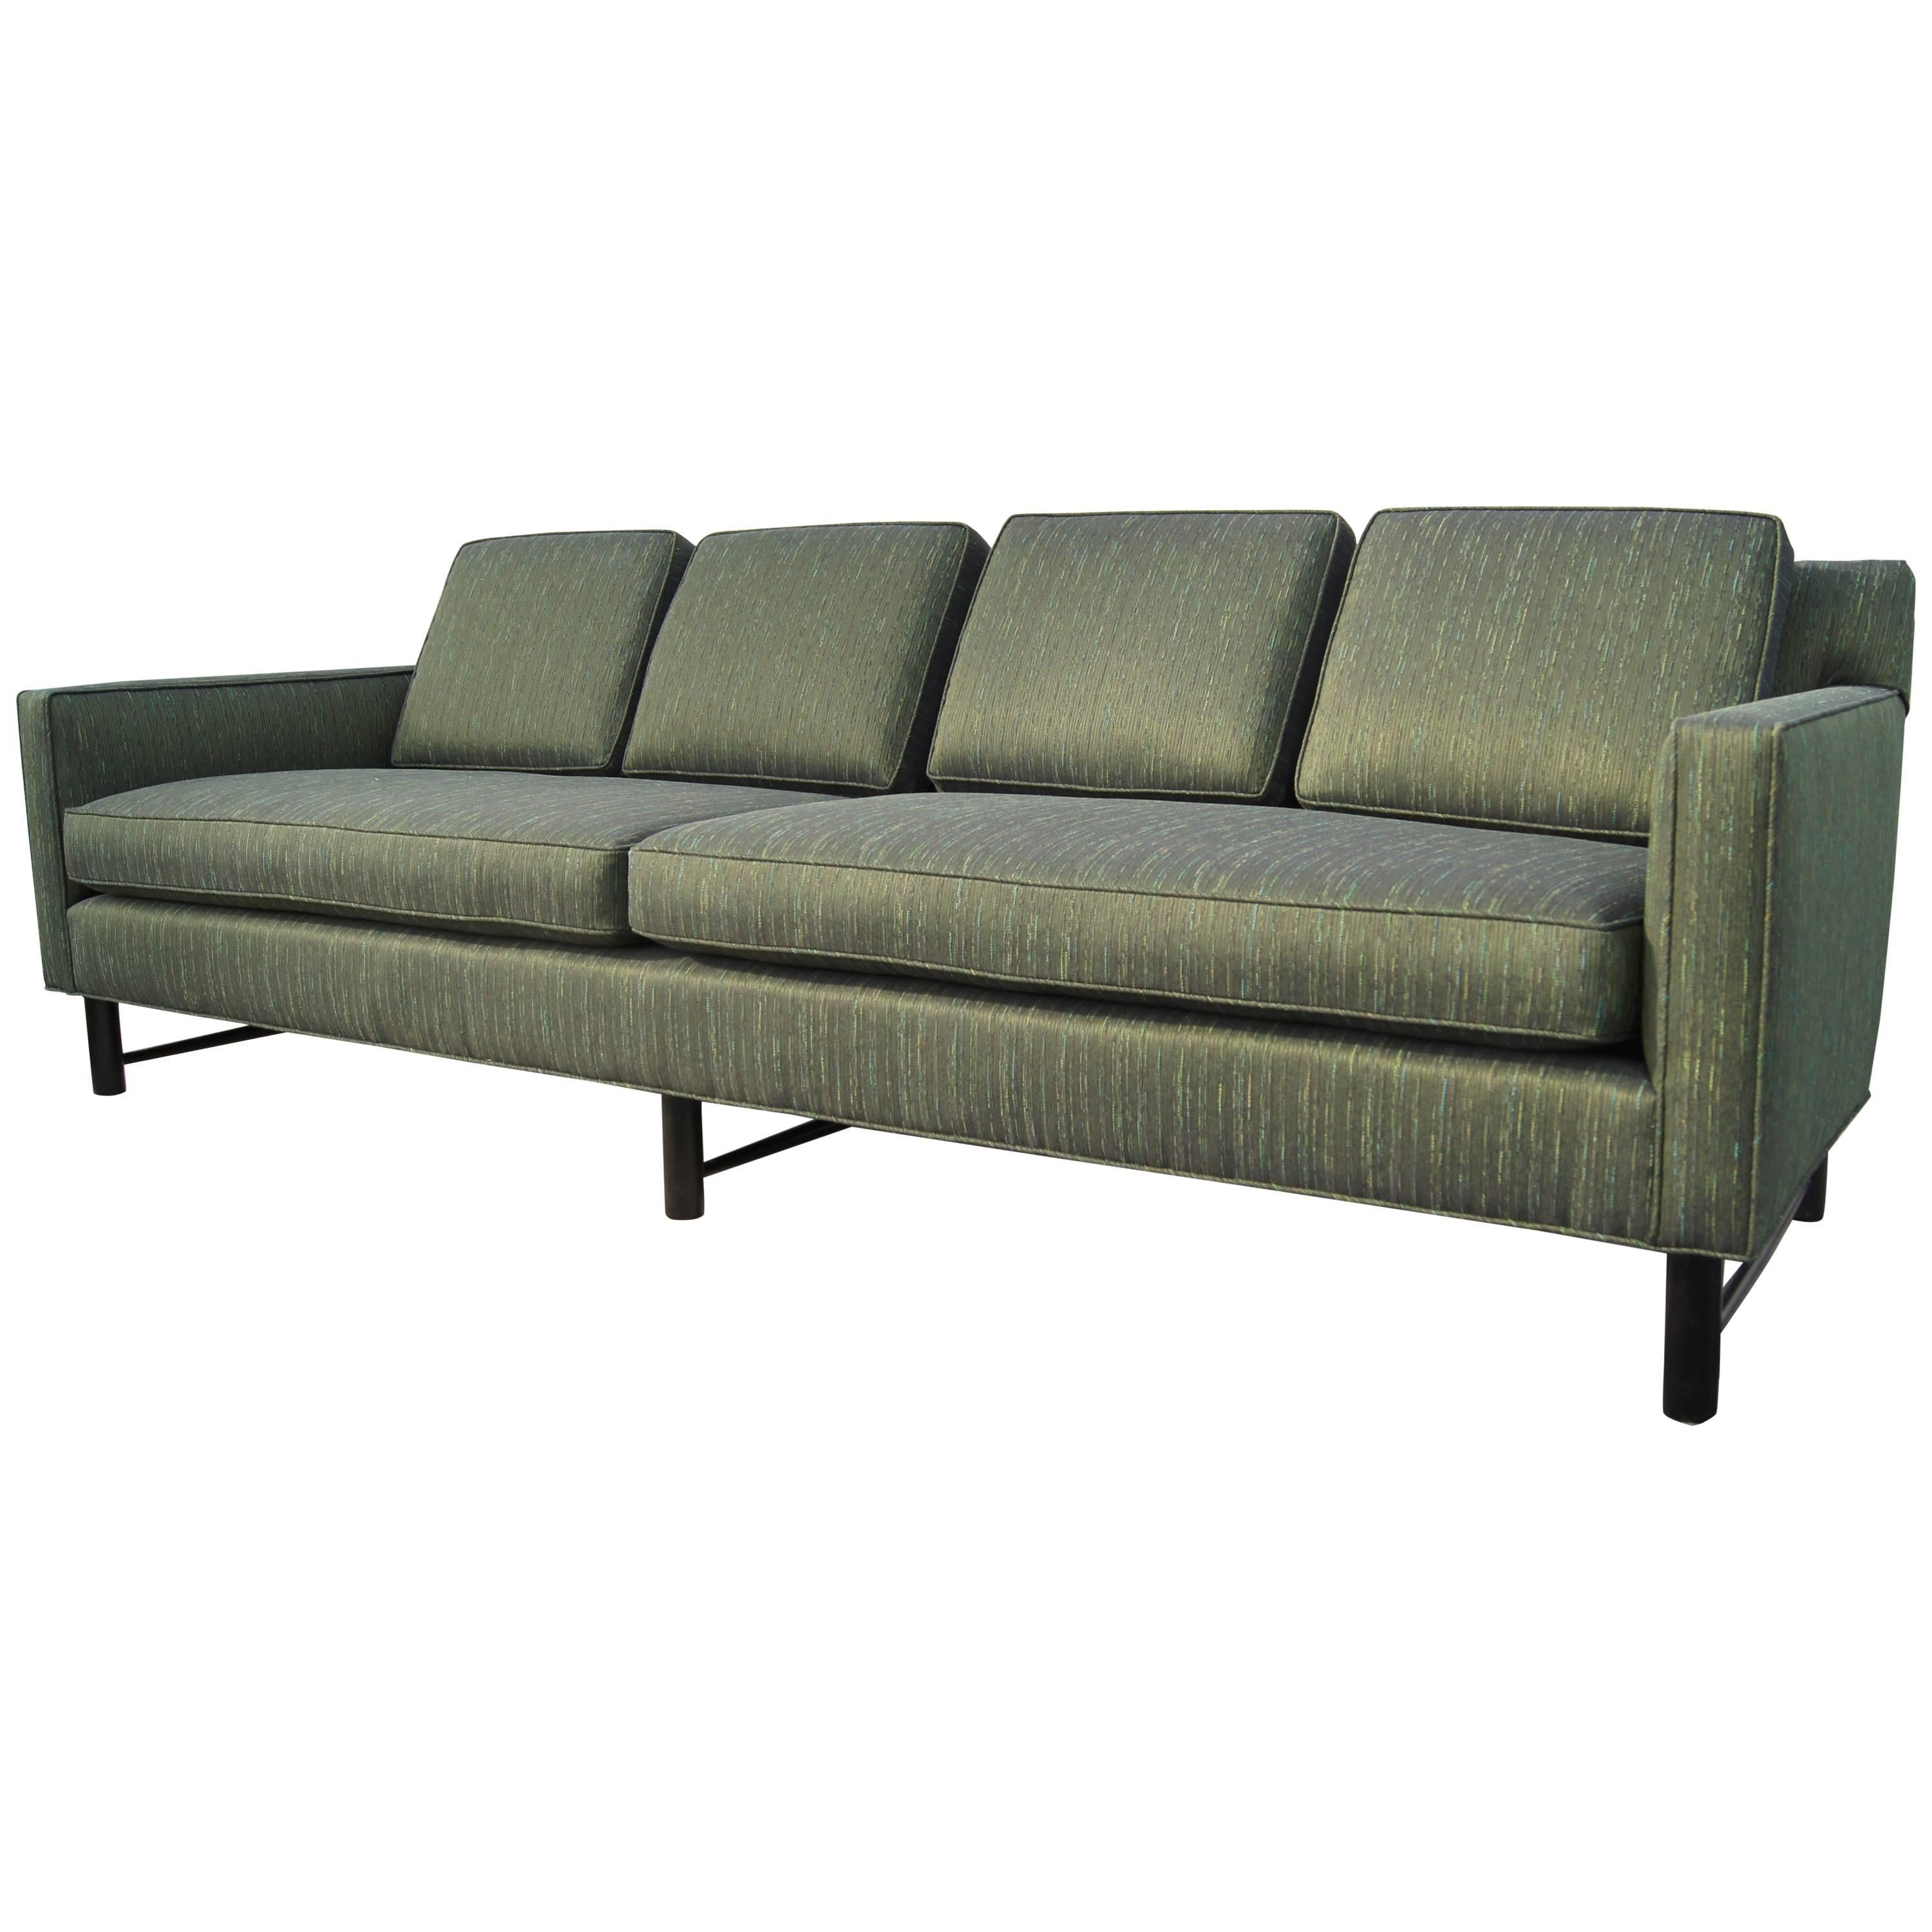 Model 5138 Sofa by Edward Wormley for Dunbar